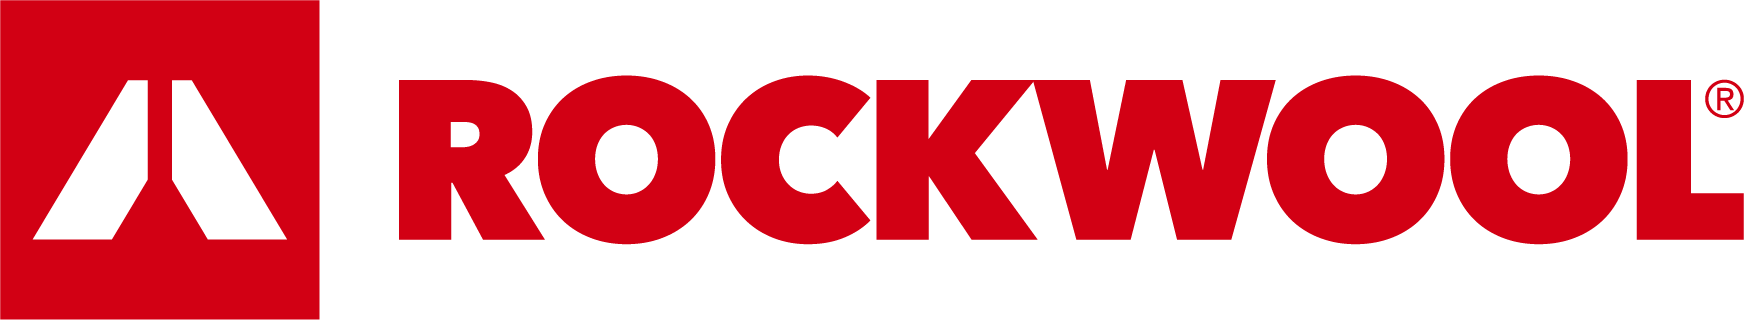 rockwool_logo